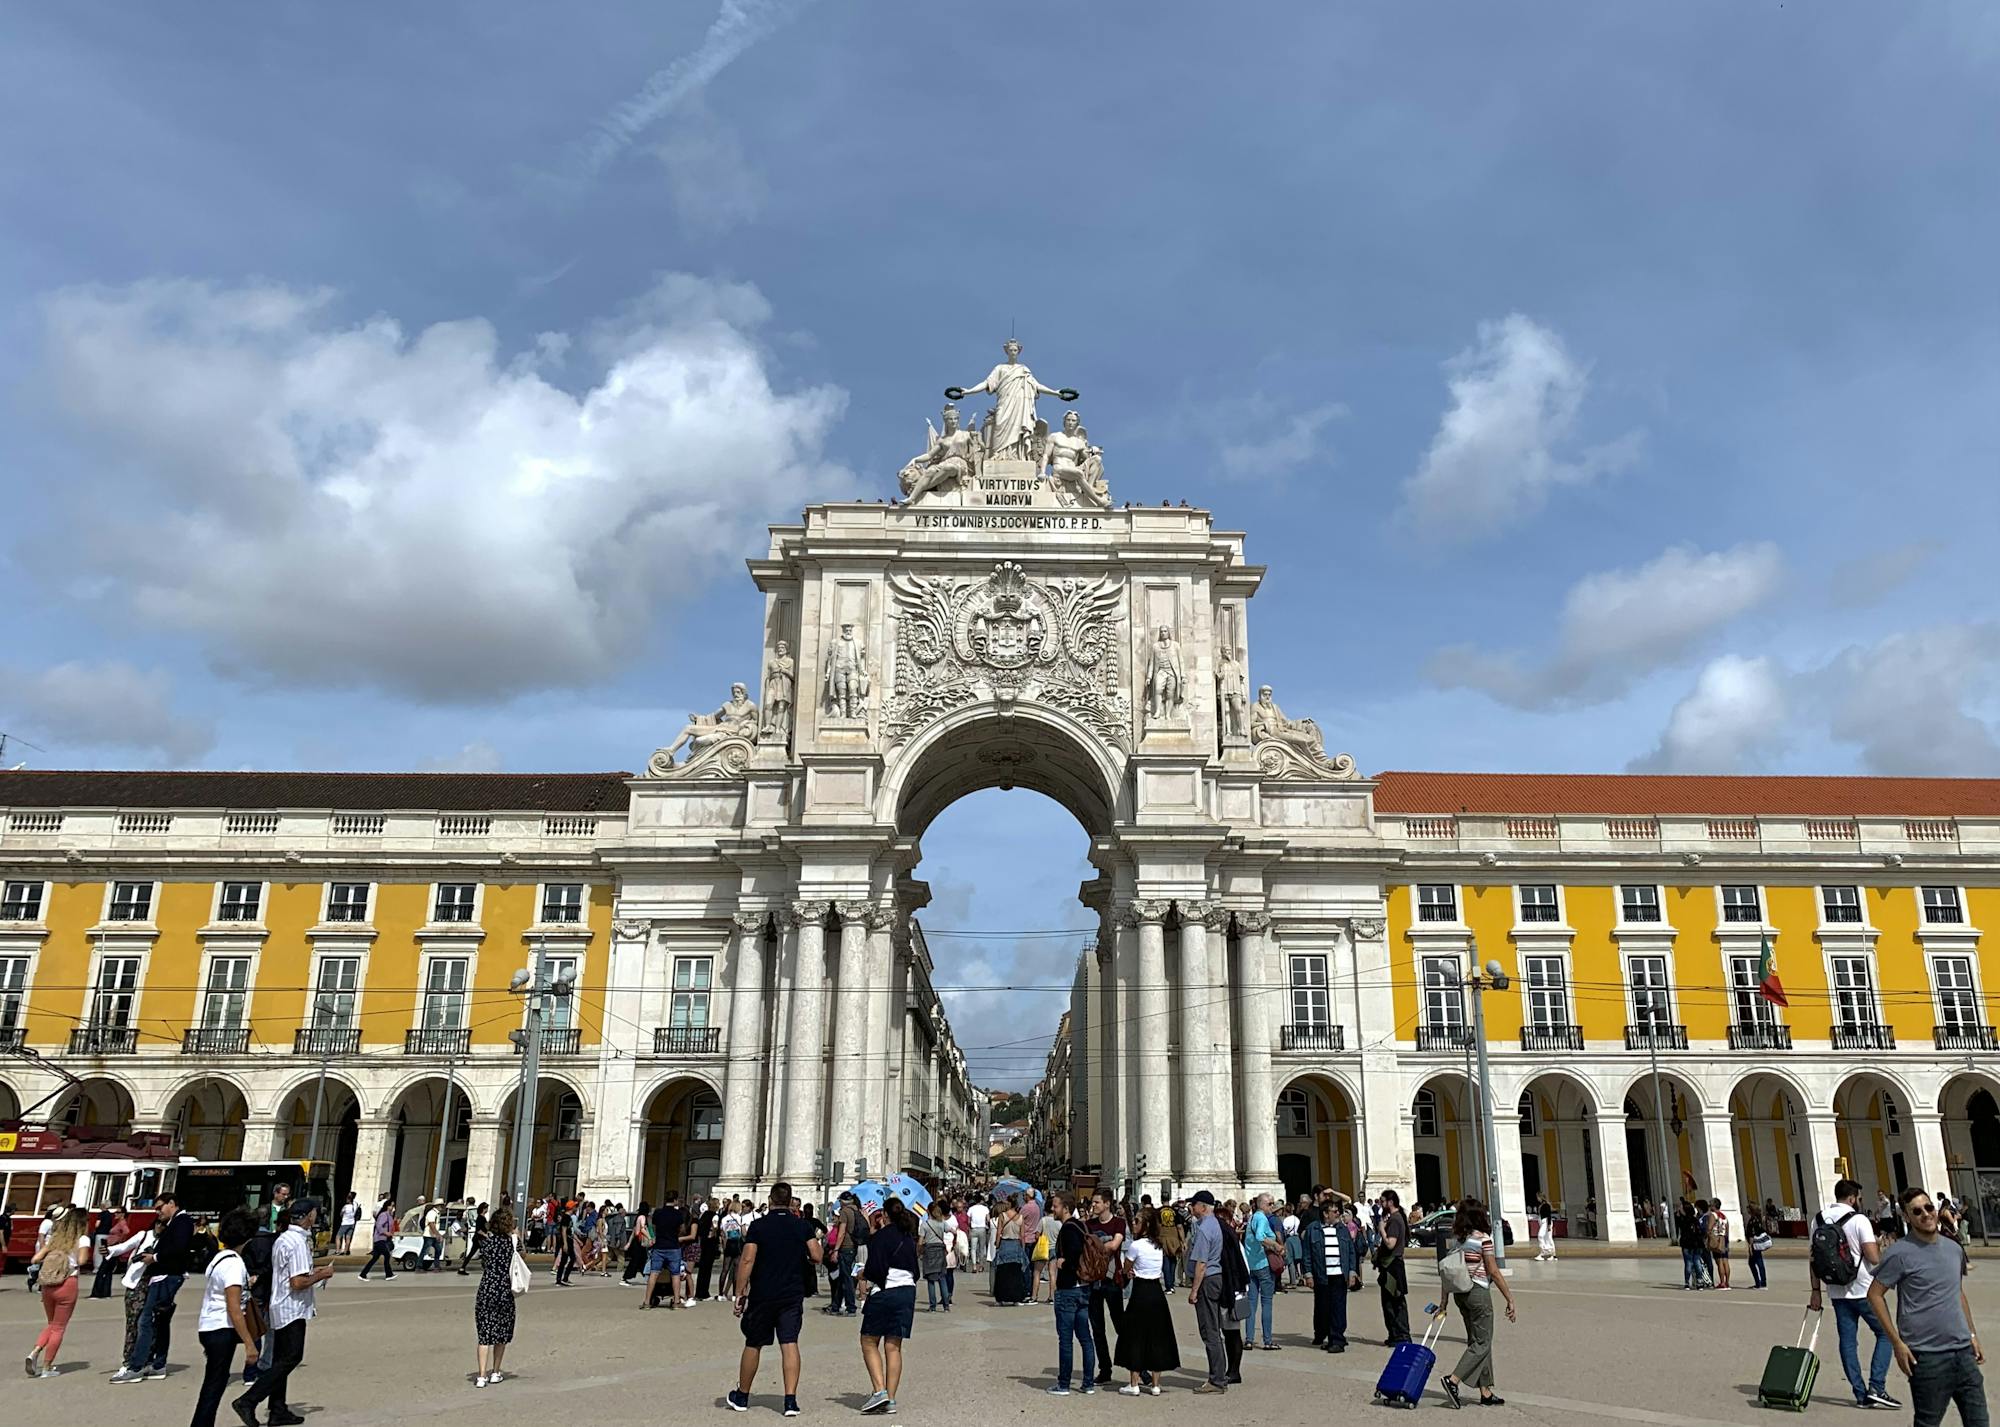 Wielu ludzi przechodzi przez Łuk Triumfalny, aby dotrzeć do ulic handlowych Lizbony.